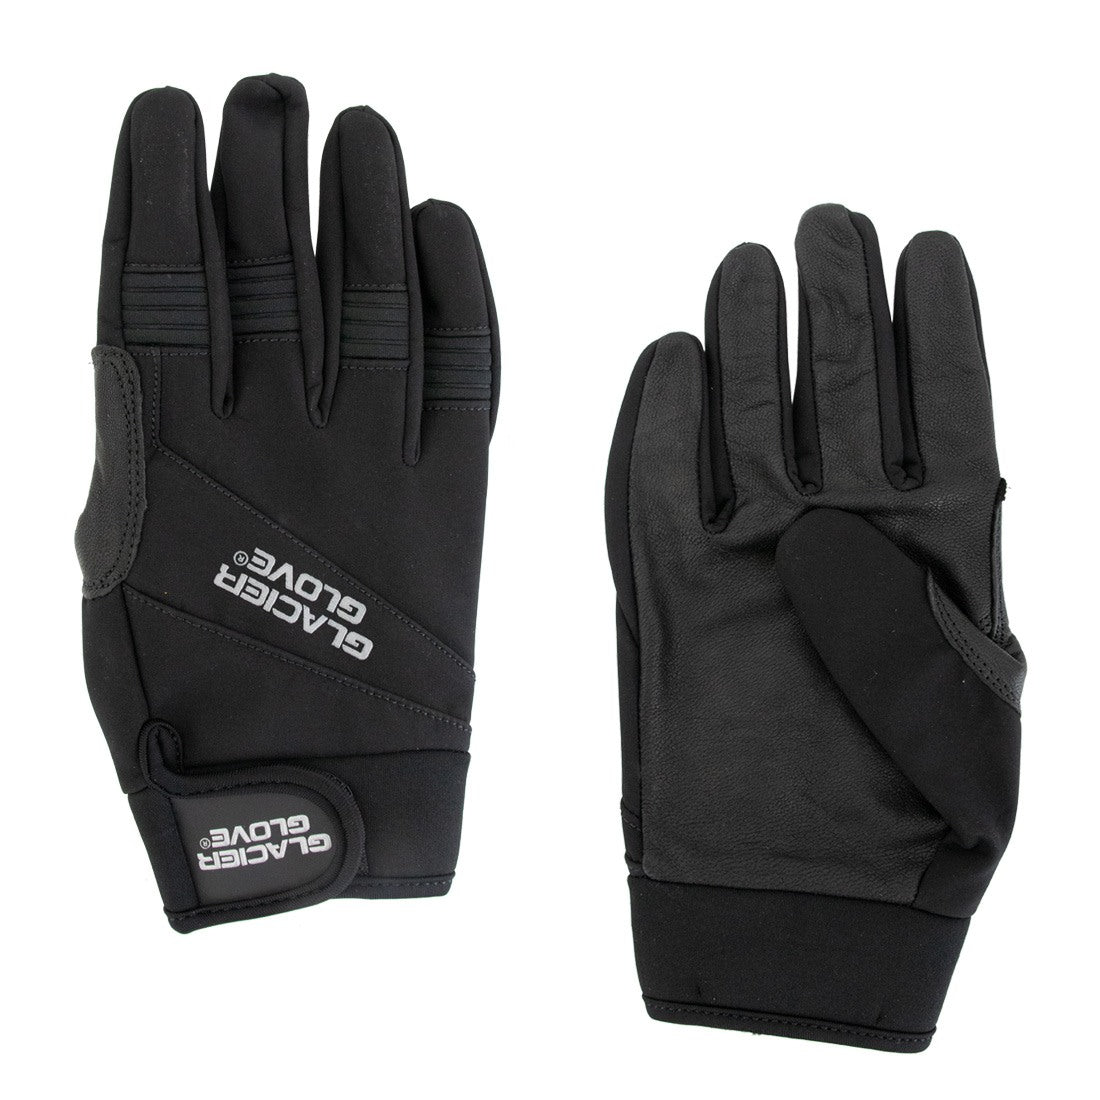 http://windowcleaner.com/cdn/shop/products/0020_glacier-glove-guide-gloves_copy_4_5.jpg?v=1667973987